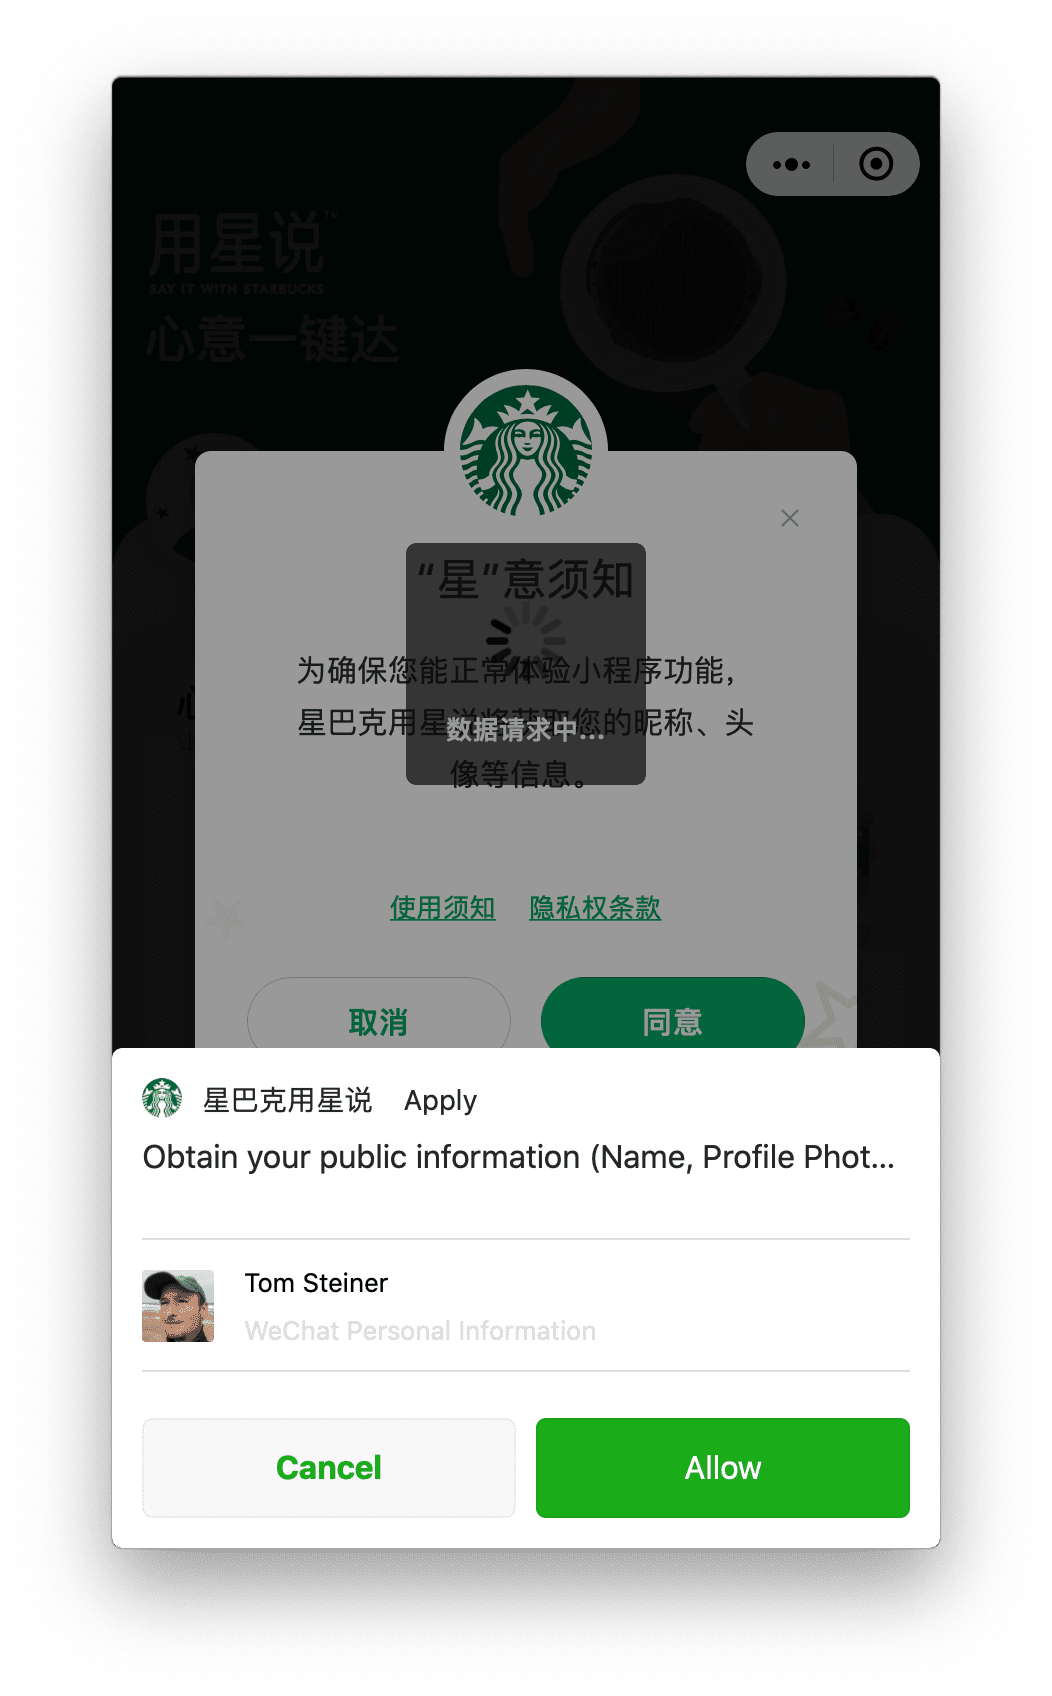 Ứng dụng nhỏ Starbucks chạy trên macOS yêu cầu quyền đối với hồ sơ người dùng mà người dùng có thể cấp thông qua một lời nhắc hiển thị ở dưới cùng.